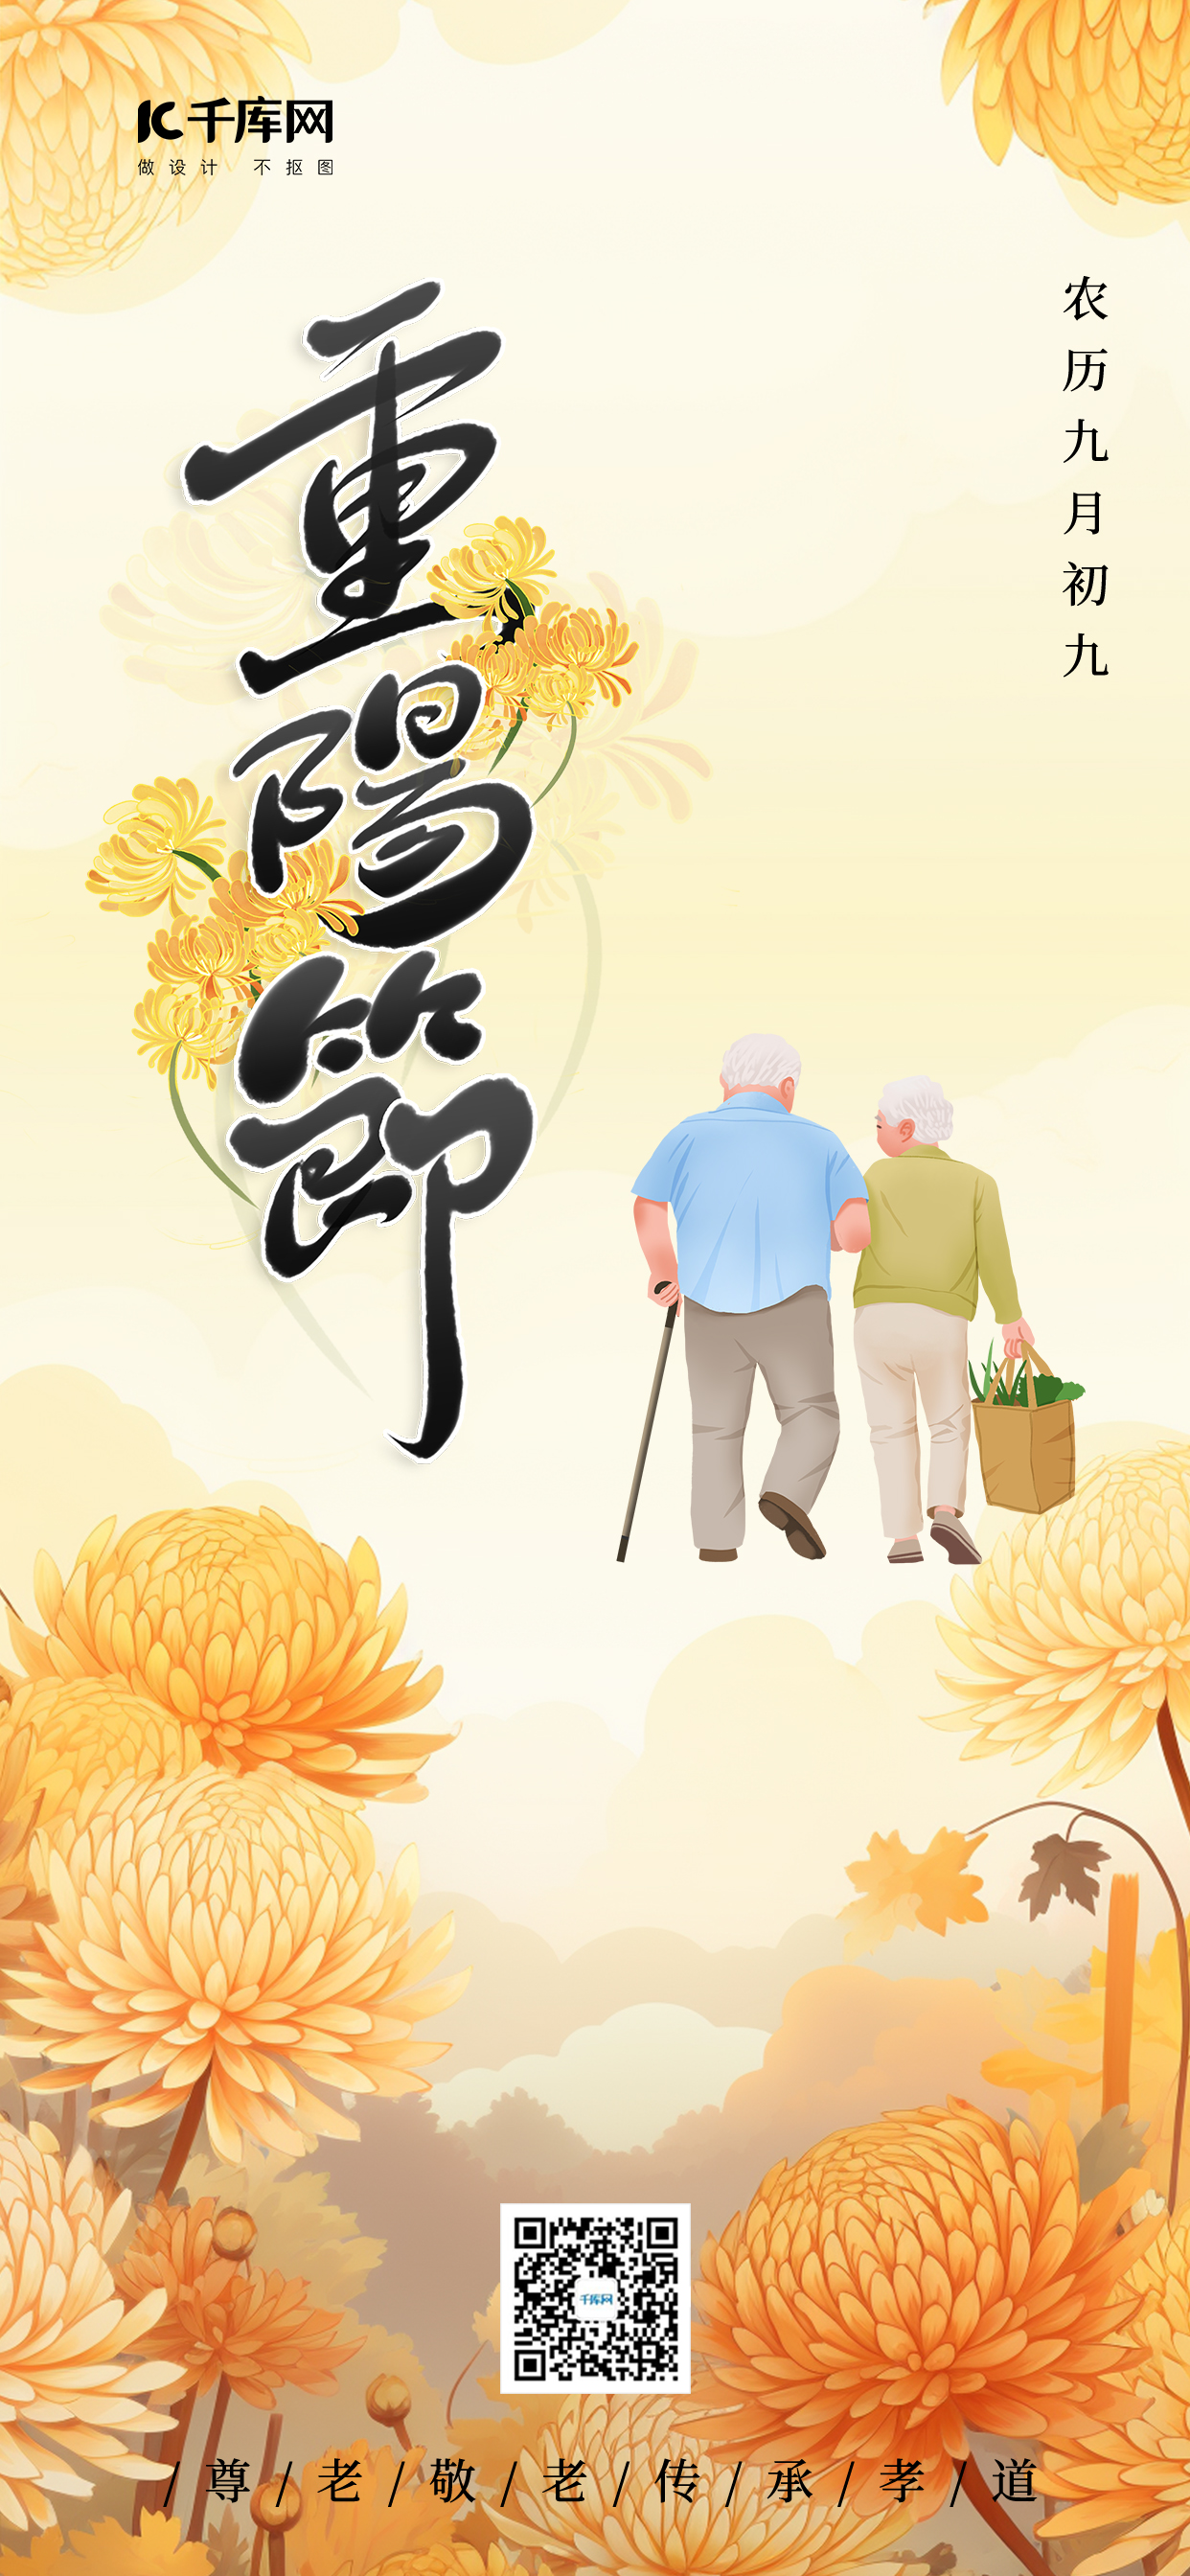 重阳节重阳节爱老敬老黄色手绘广告宣传AIGC海报图片